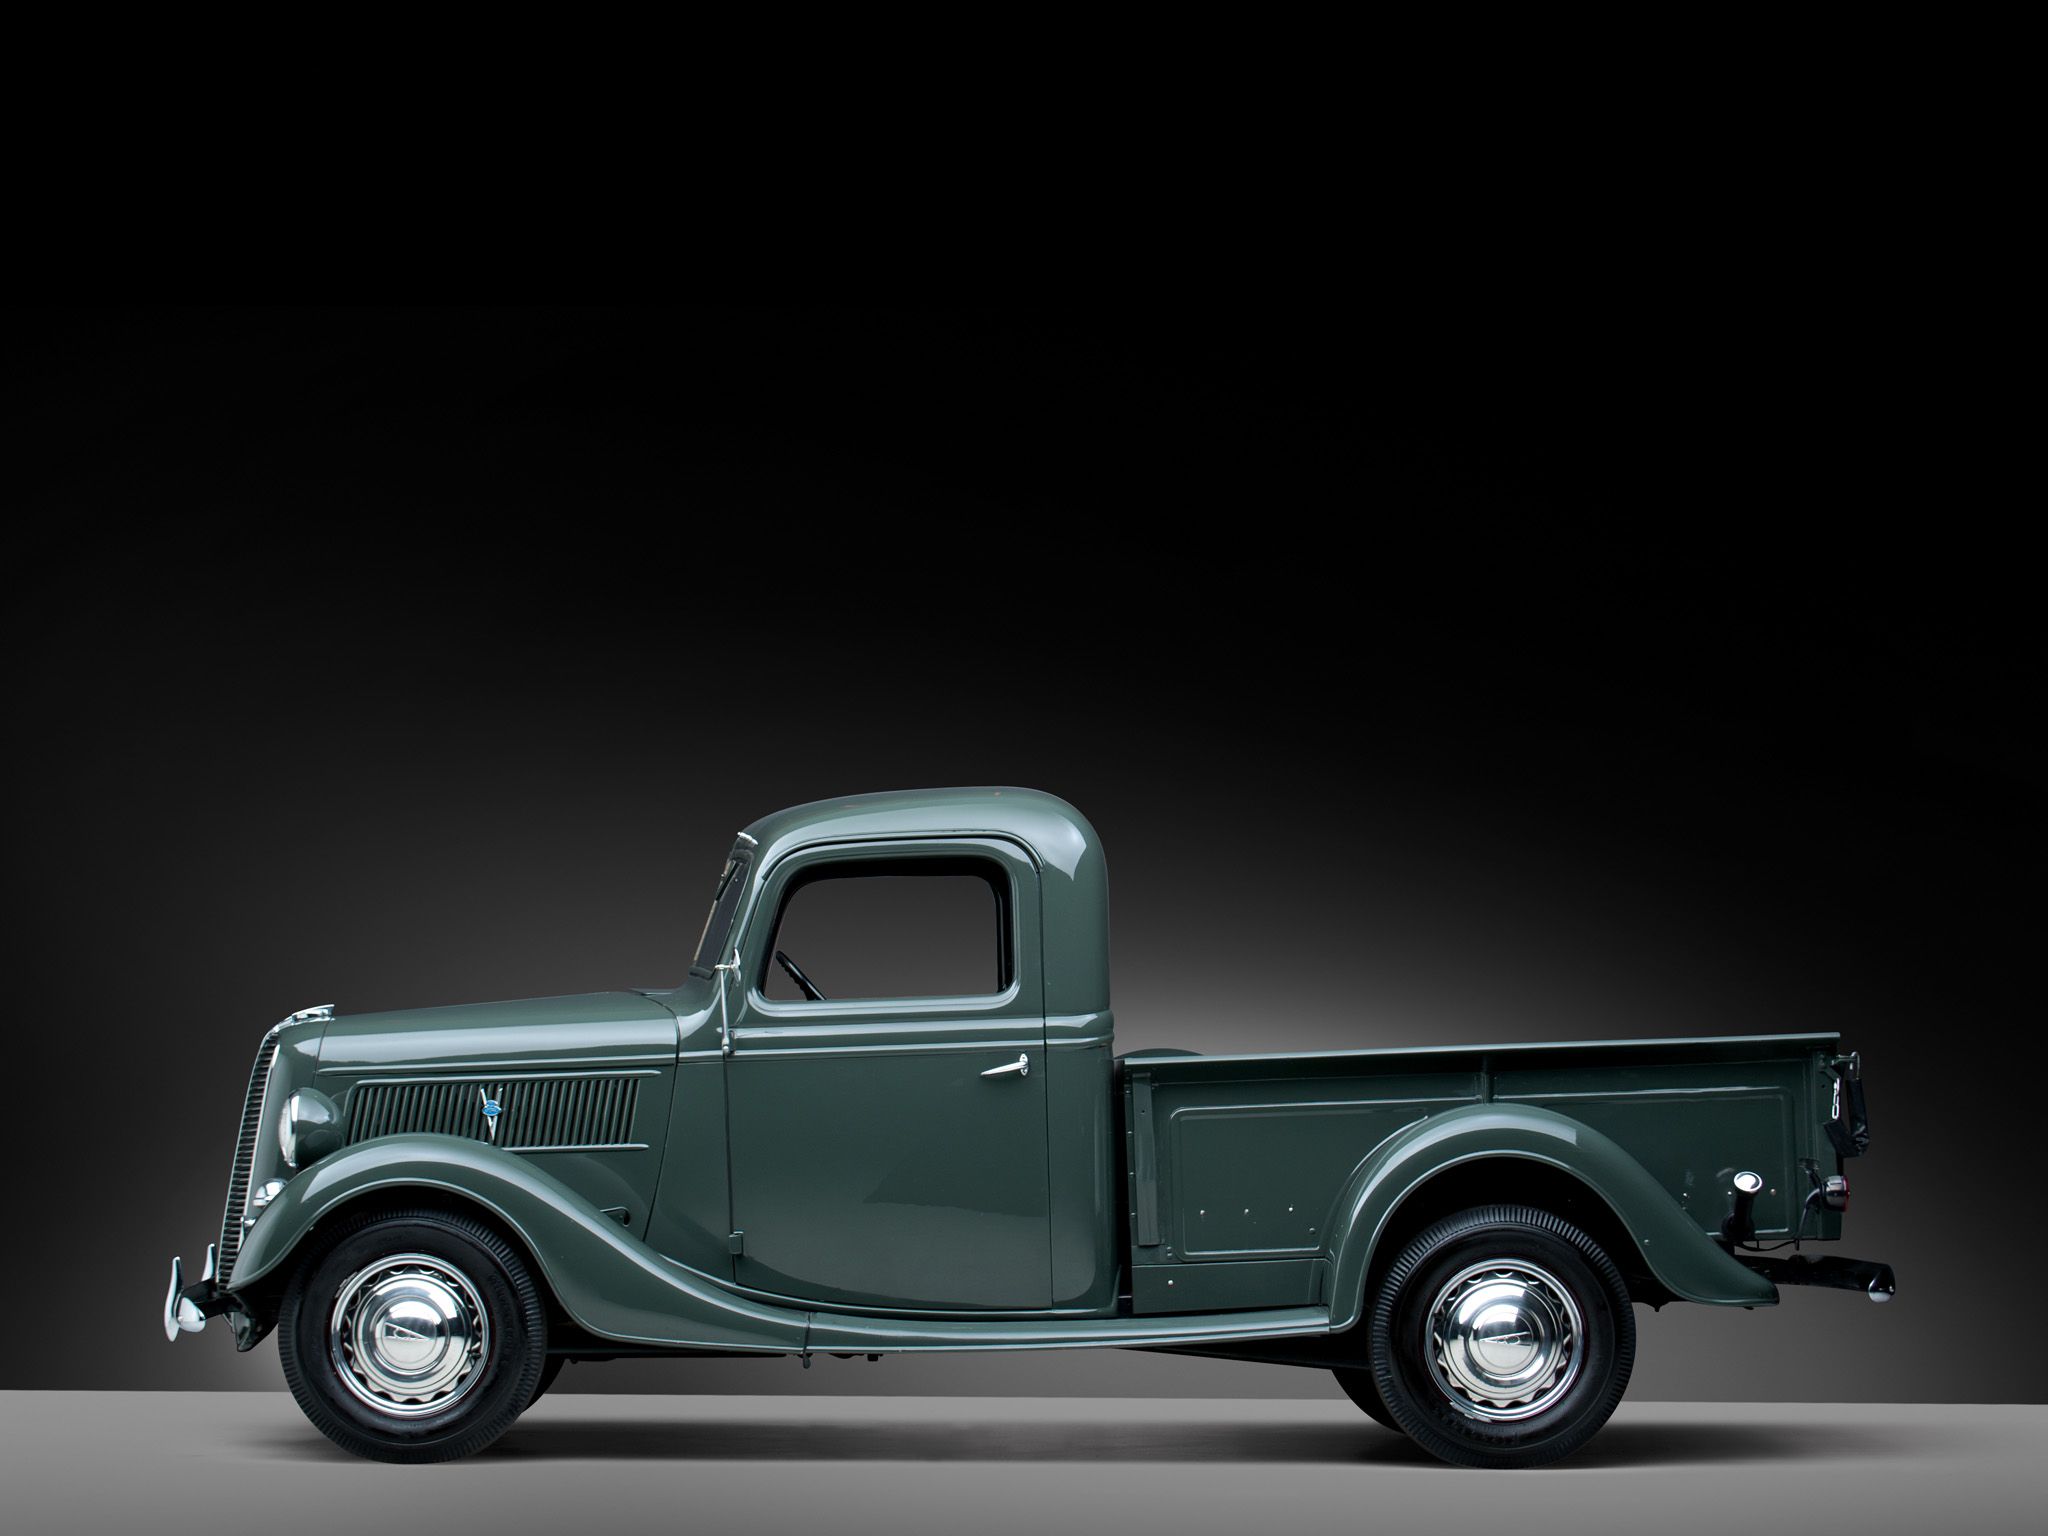 1937 Ford V8 Deluxe Pickup truck retro v-8 g wallpaper | 2048x1536 ...